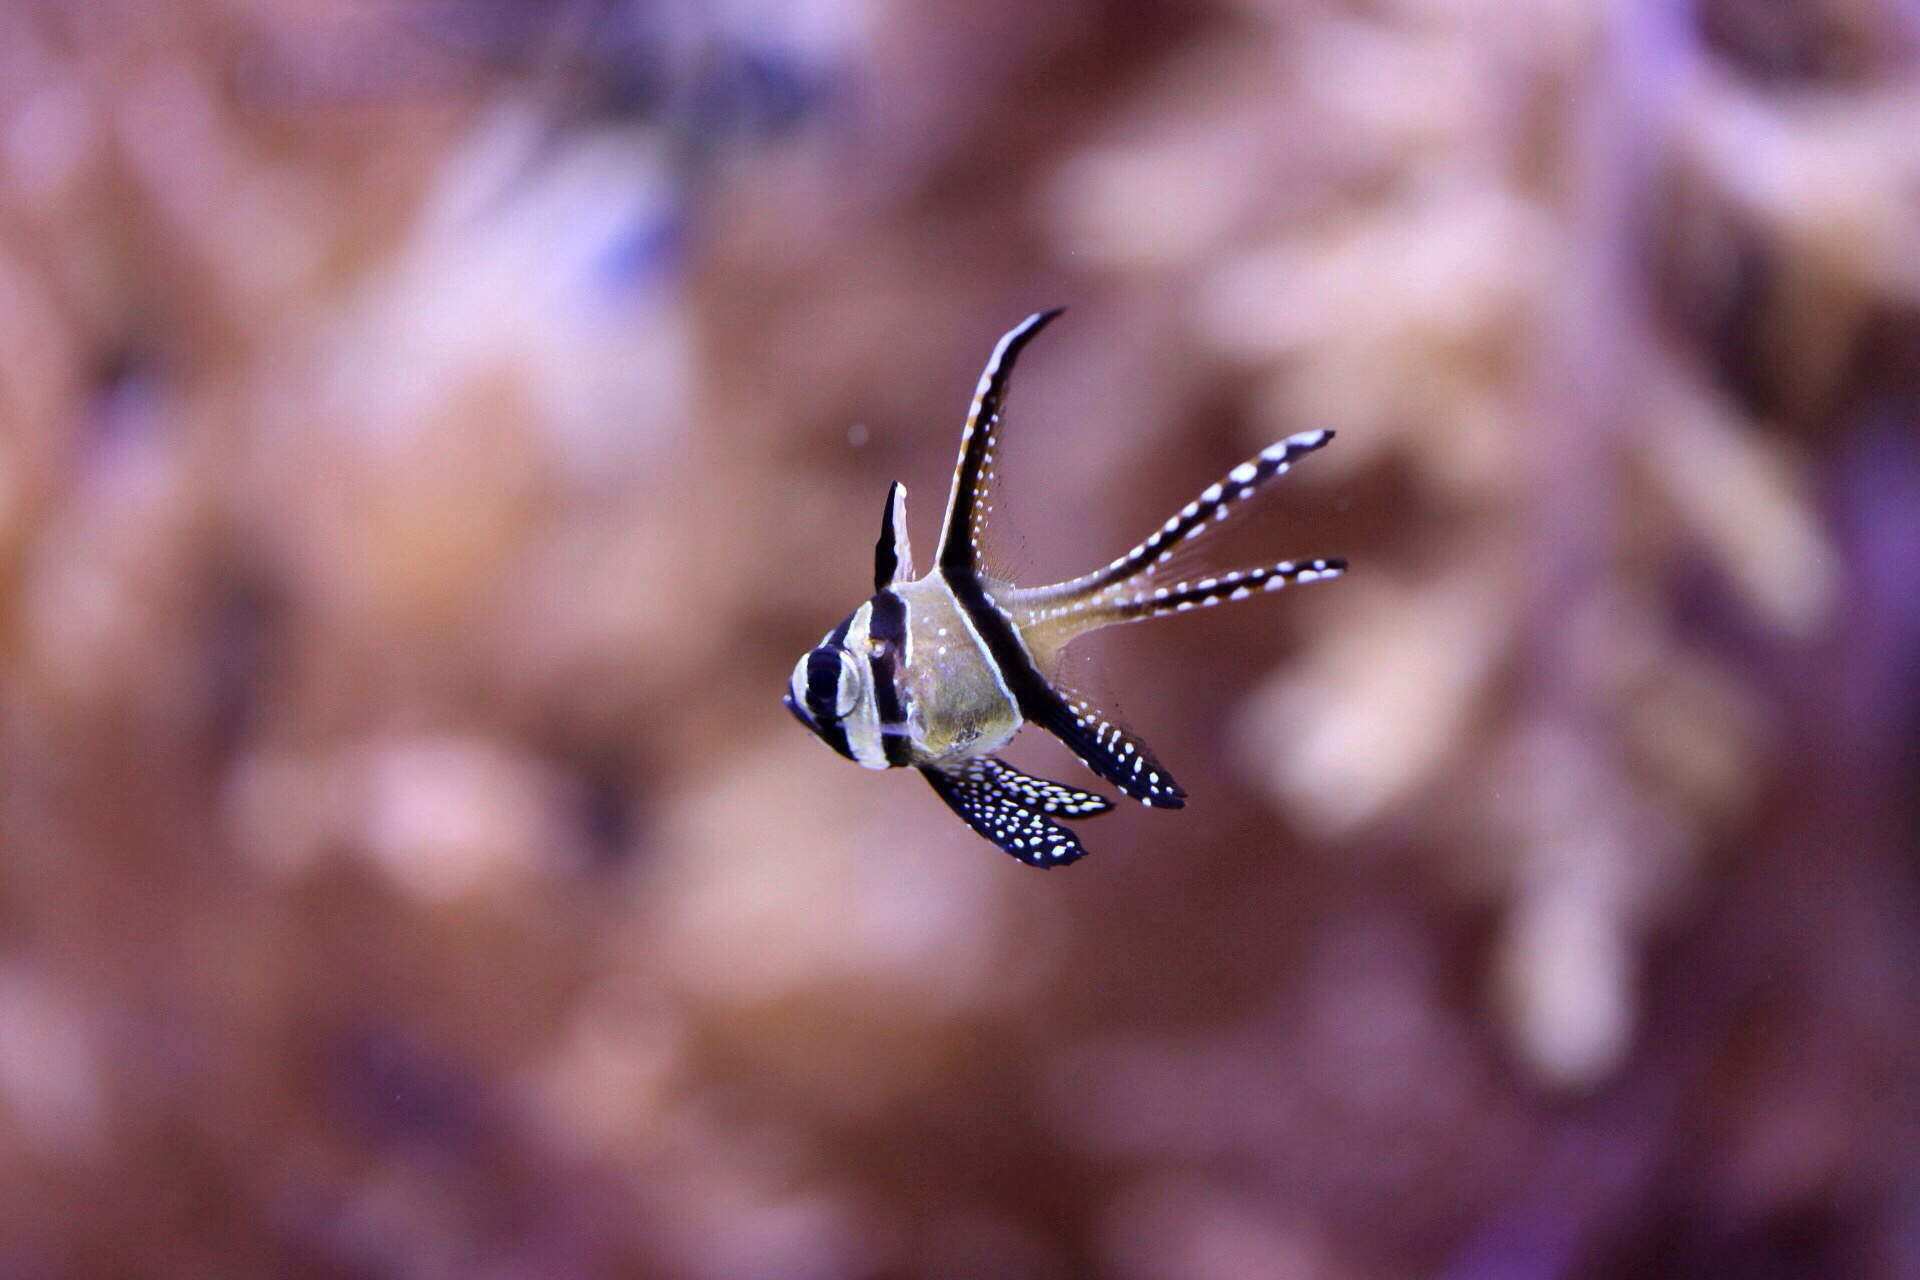 Sa Mu underwater jellyfish Photographer Fotografo